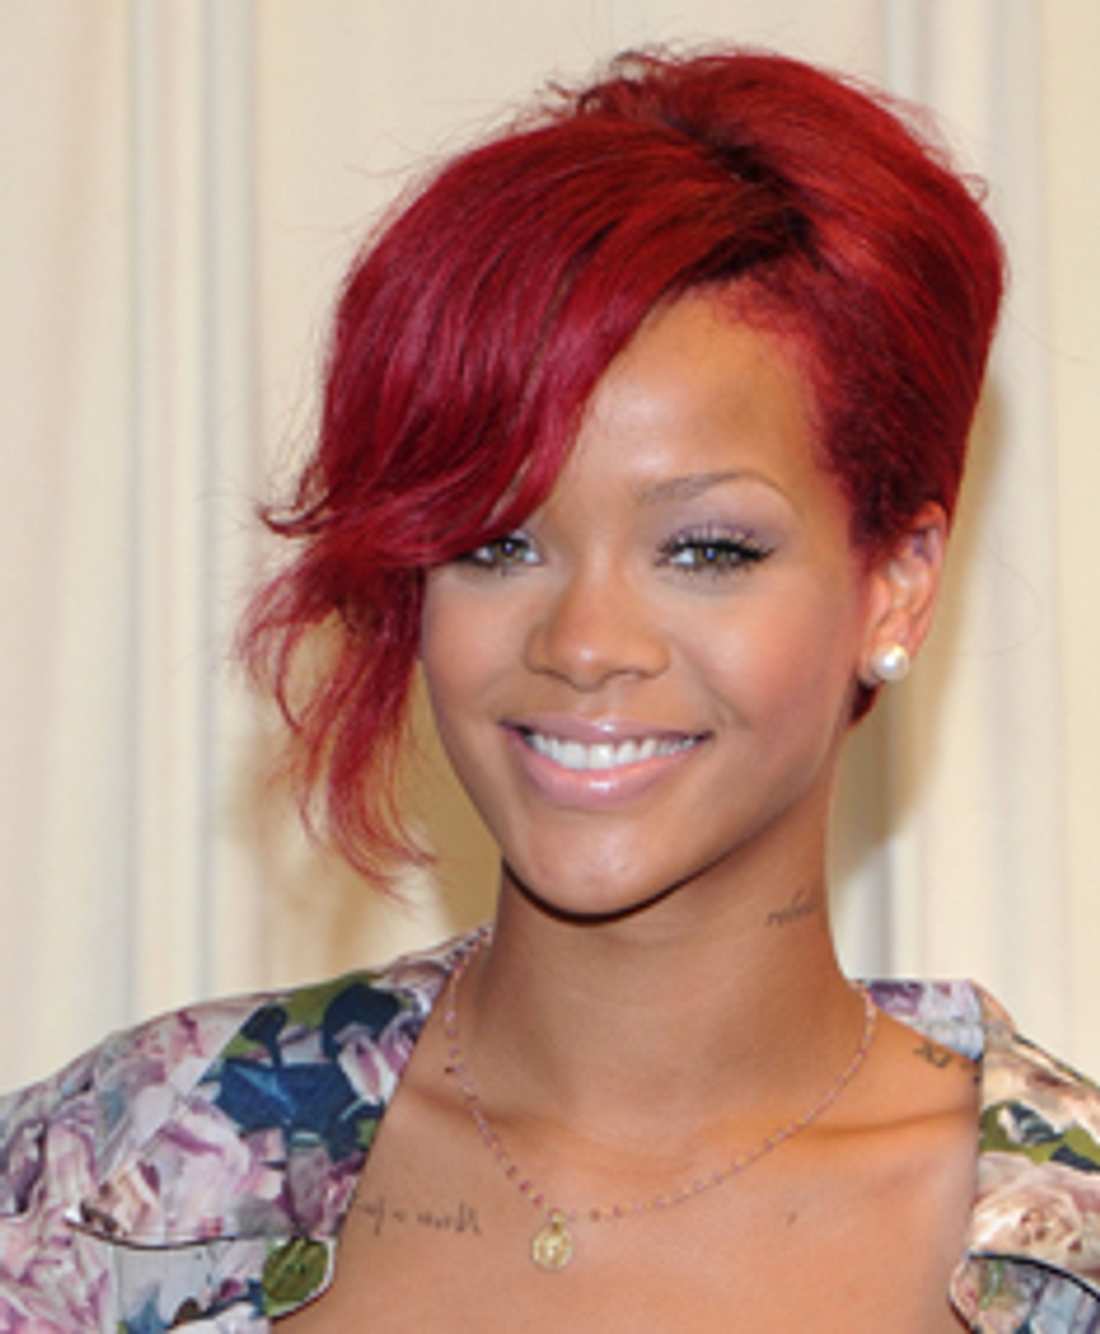 Rihannas rote Haare bringen einige Probleme mit sich!